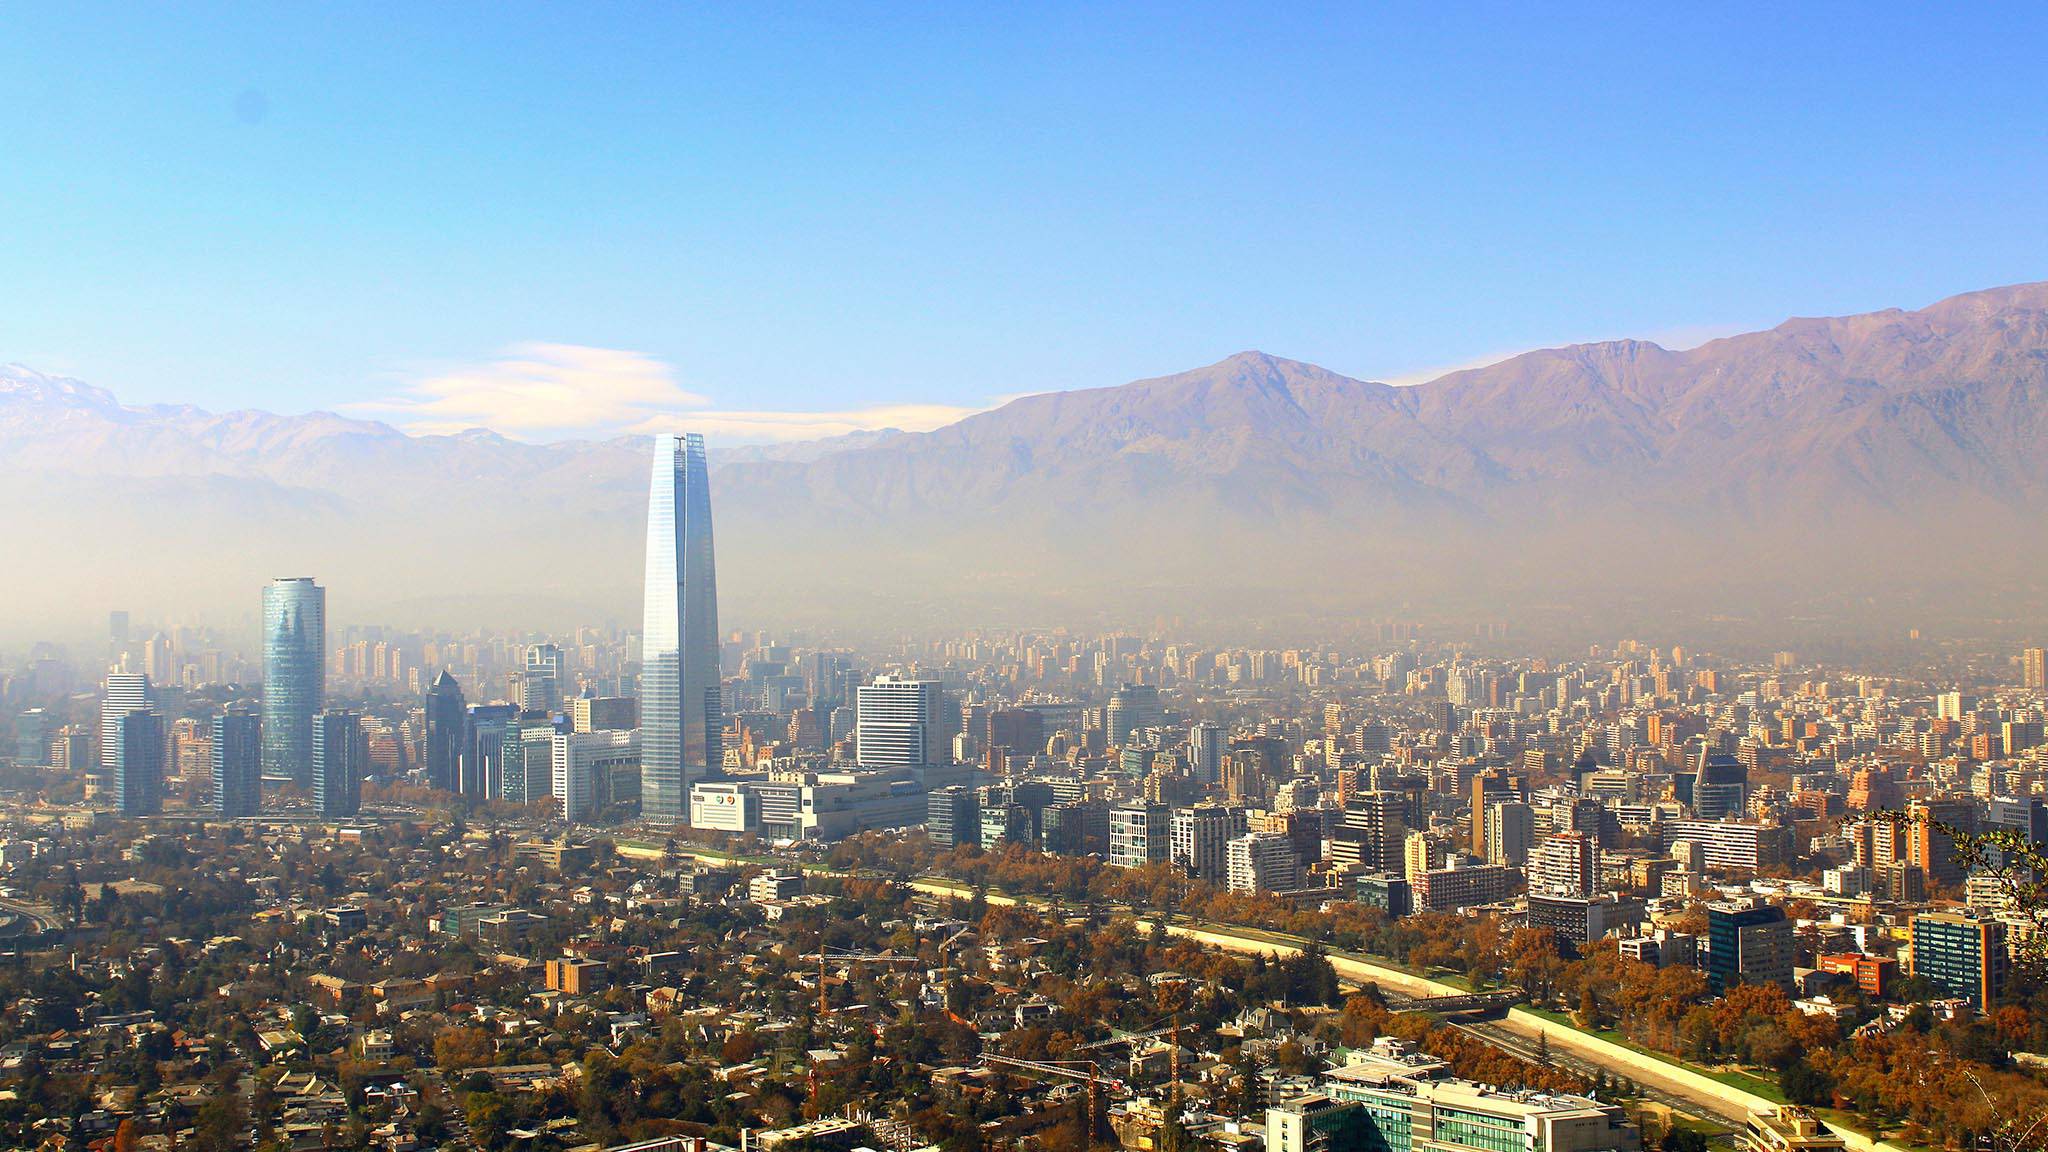 Santiago de Chile expat Community for Santiago de Chile expats